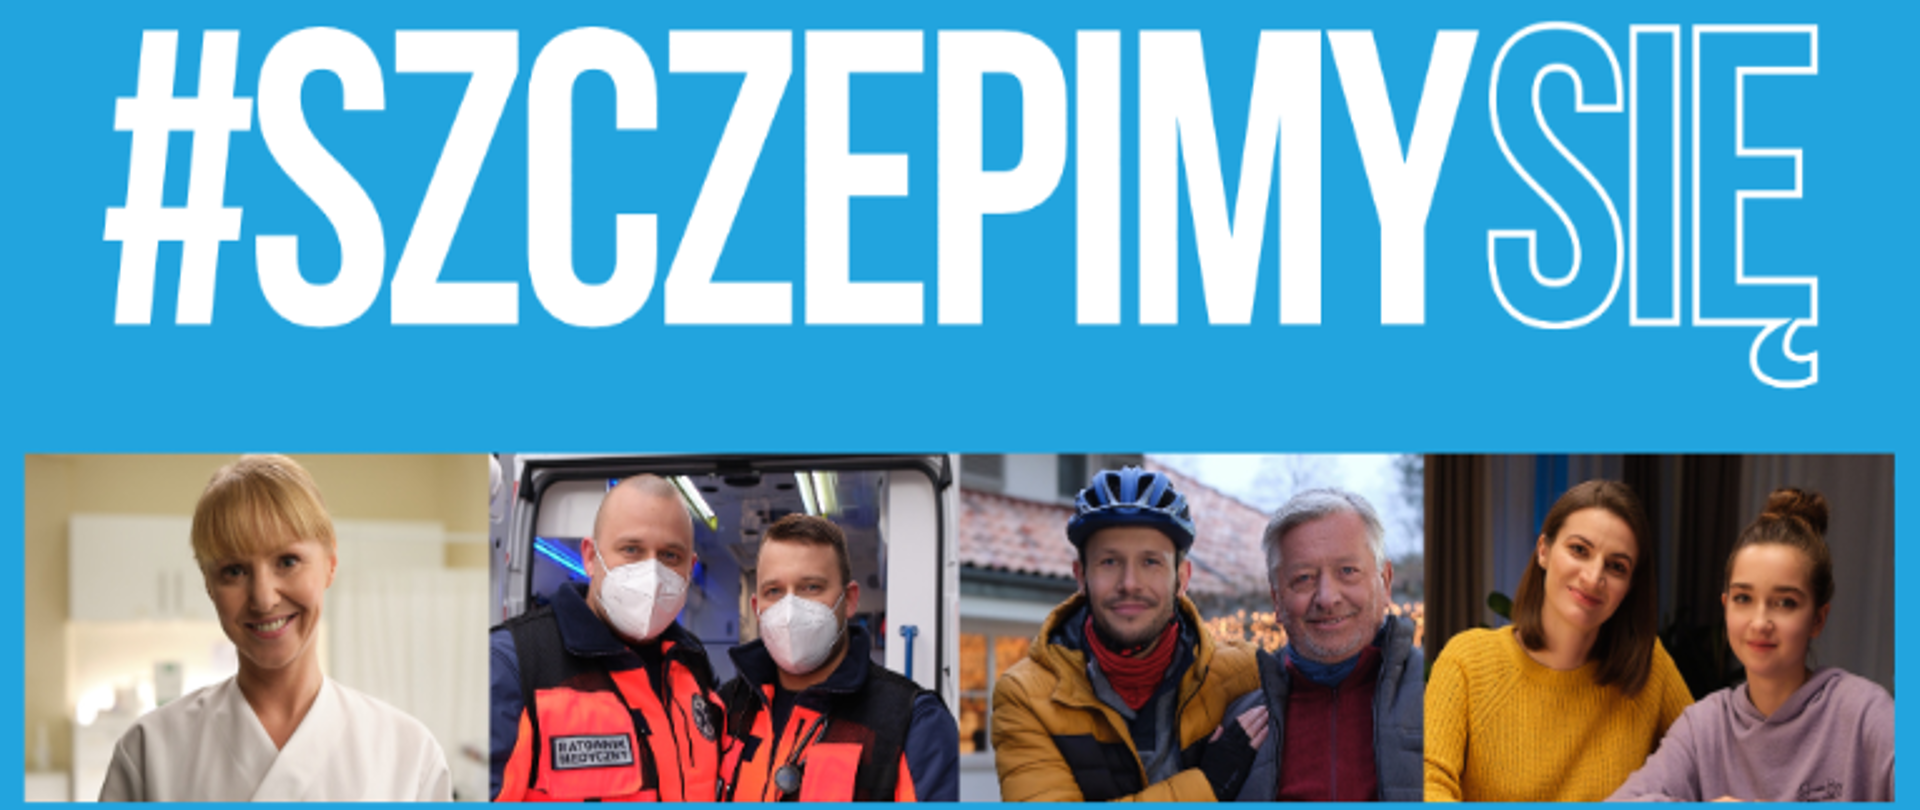 Zdjęcie przedstawia niebieski plakat z napisem "TO U NAS RODZINNE! #SzczepimySie". Na plakacie widać zadowolonych ludzi z różnych zawodów i w różnym wieku. Na plakacie podano adres strony internetowej zawierające rzetelne informacje na temat szczepień przeciwko COVID-19 adres strony: gov.pl/szczepimysie